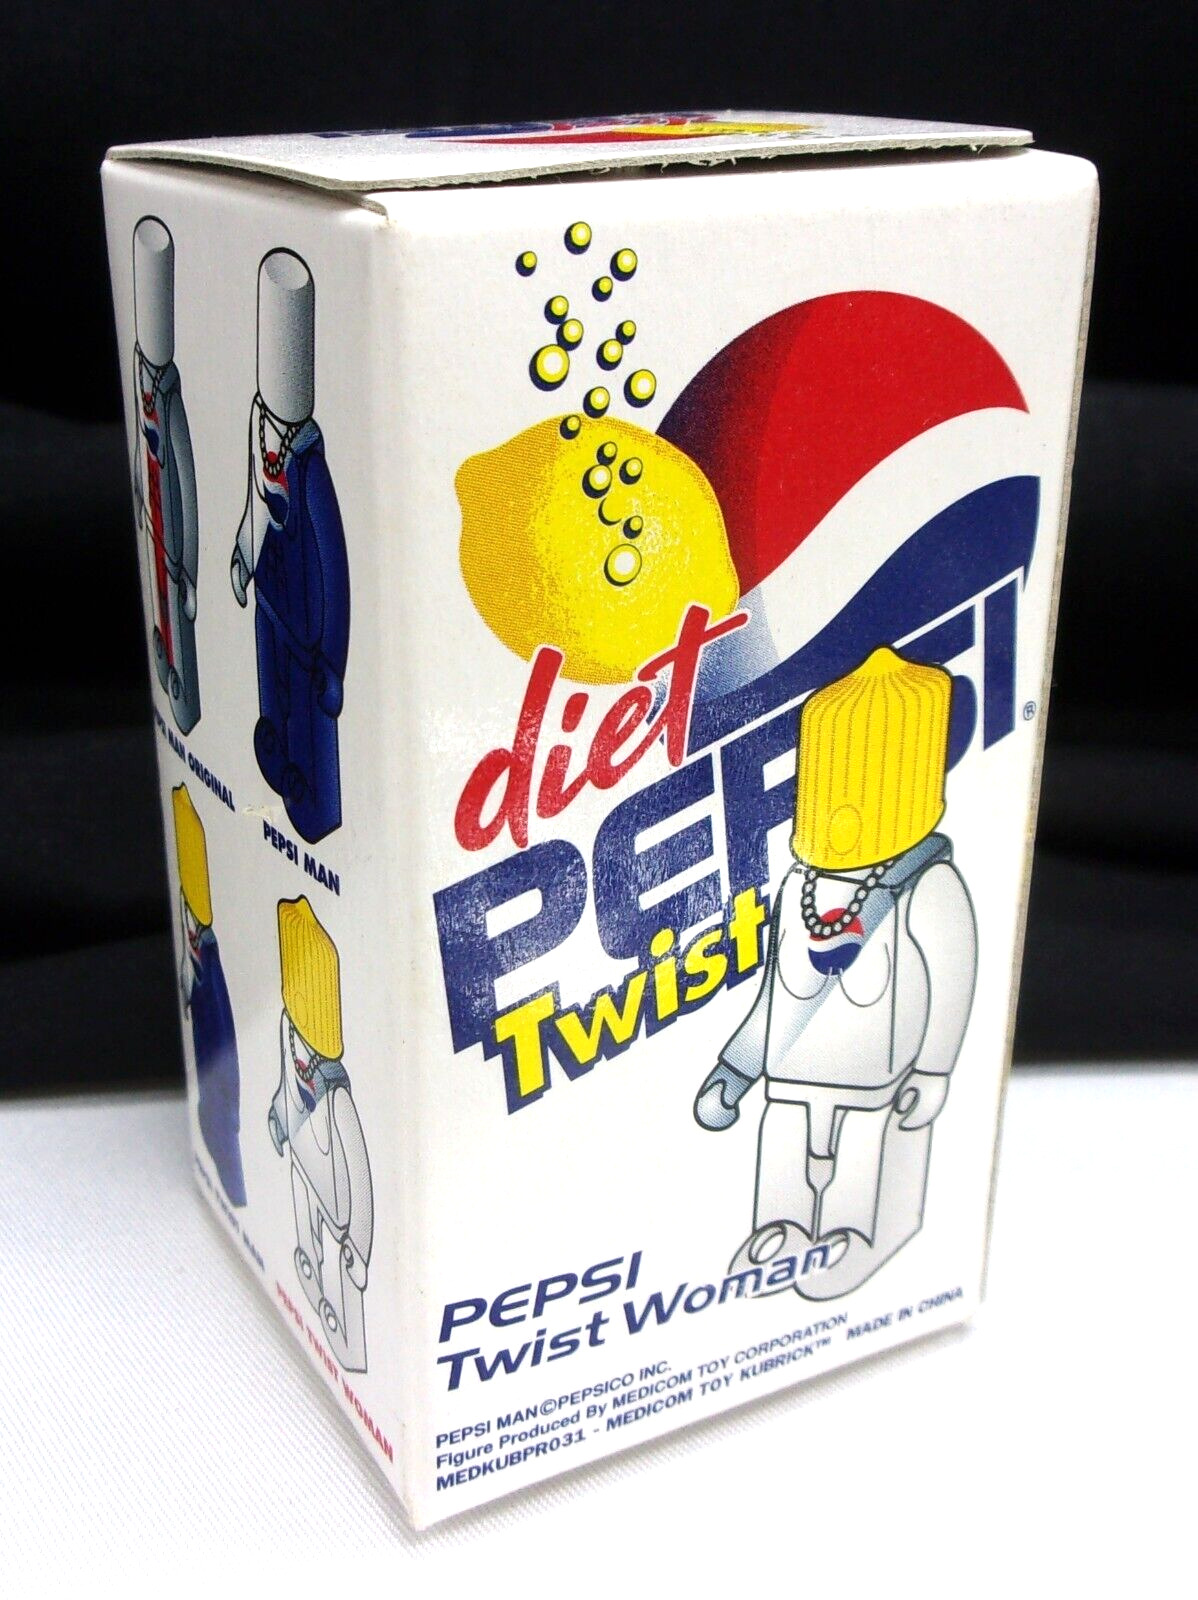 Pepsi Twist Woman - Vintage 2003 KUBRICK - Medicom Toy - Japan - Sealed